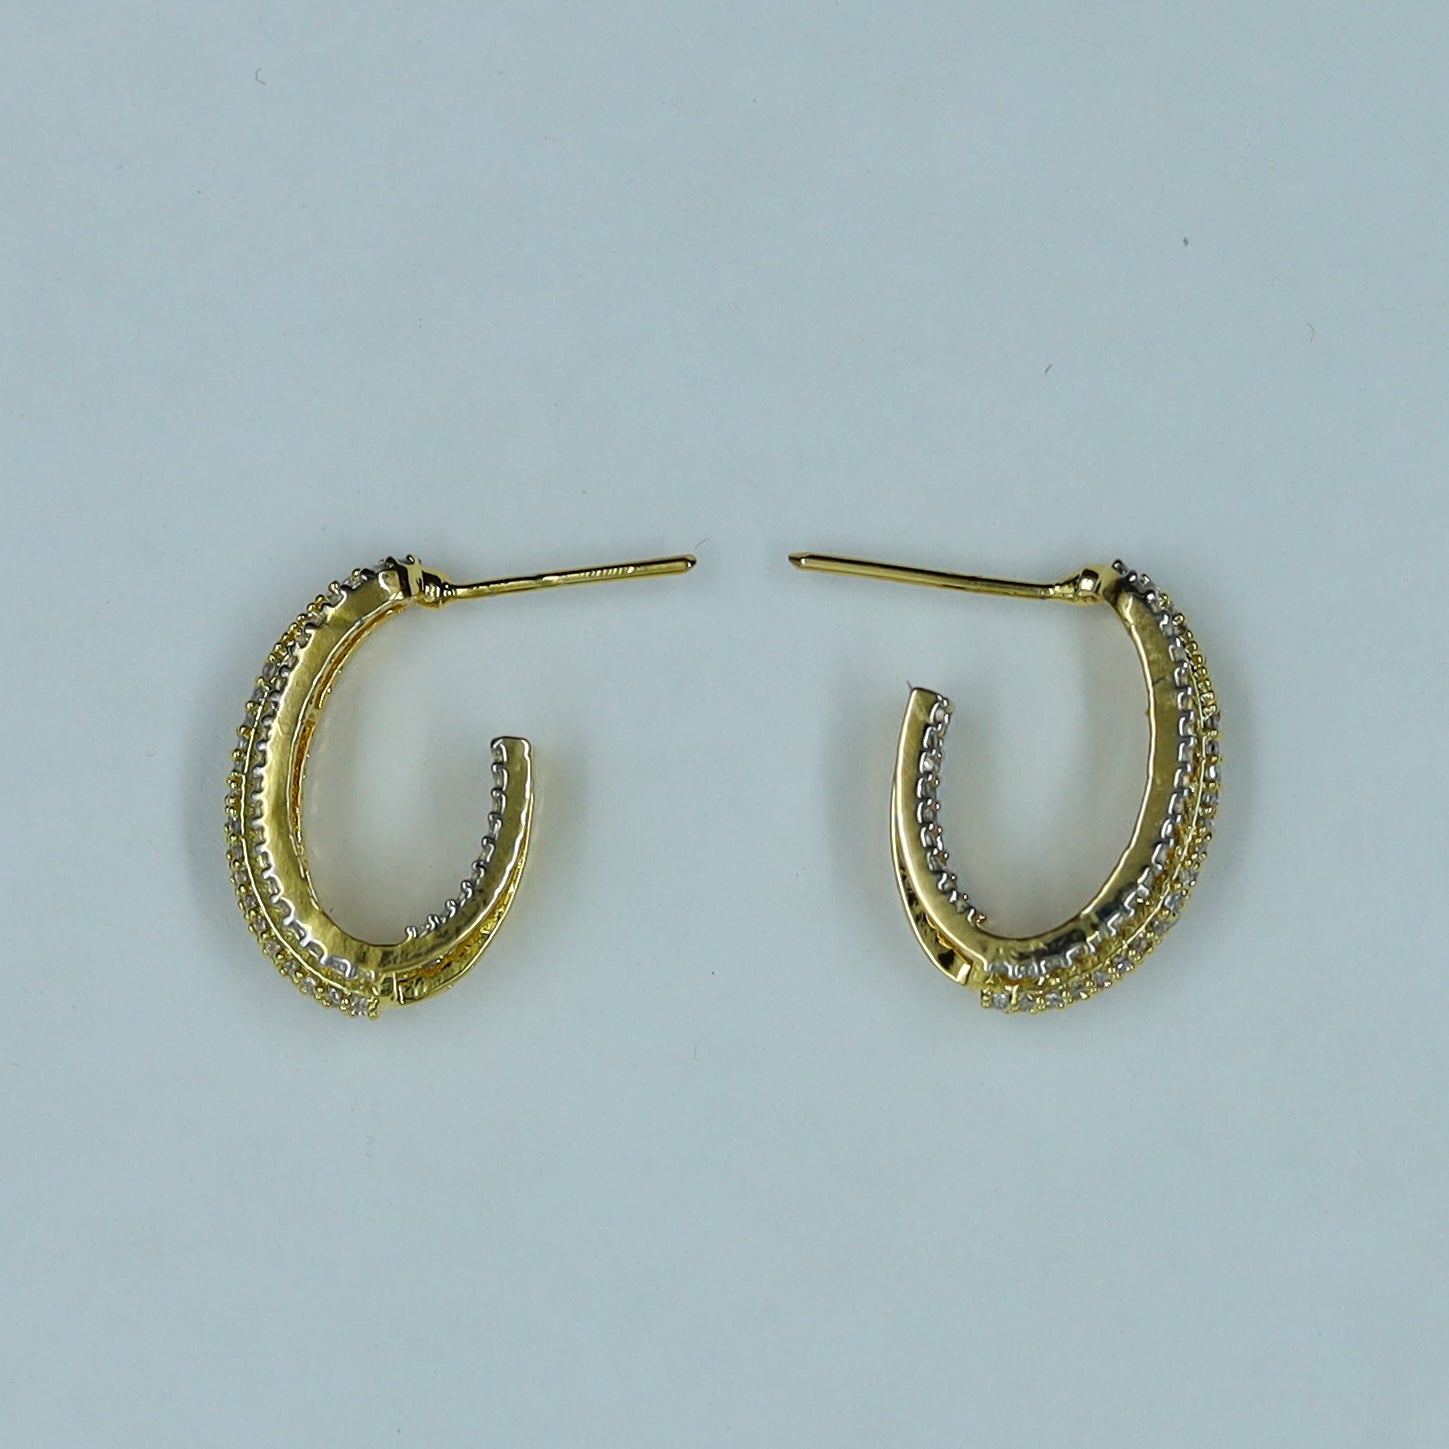 Bali Zircon/AD Earring 11955-69